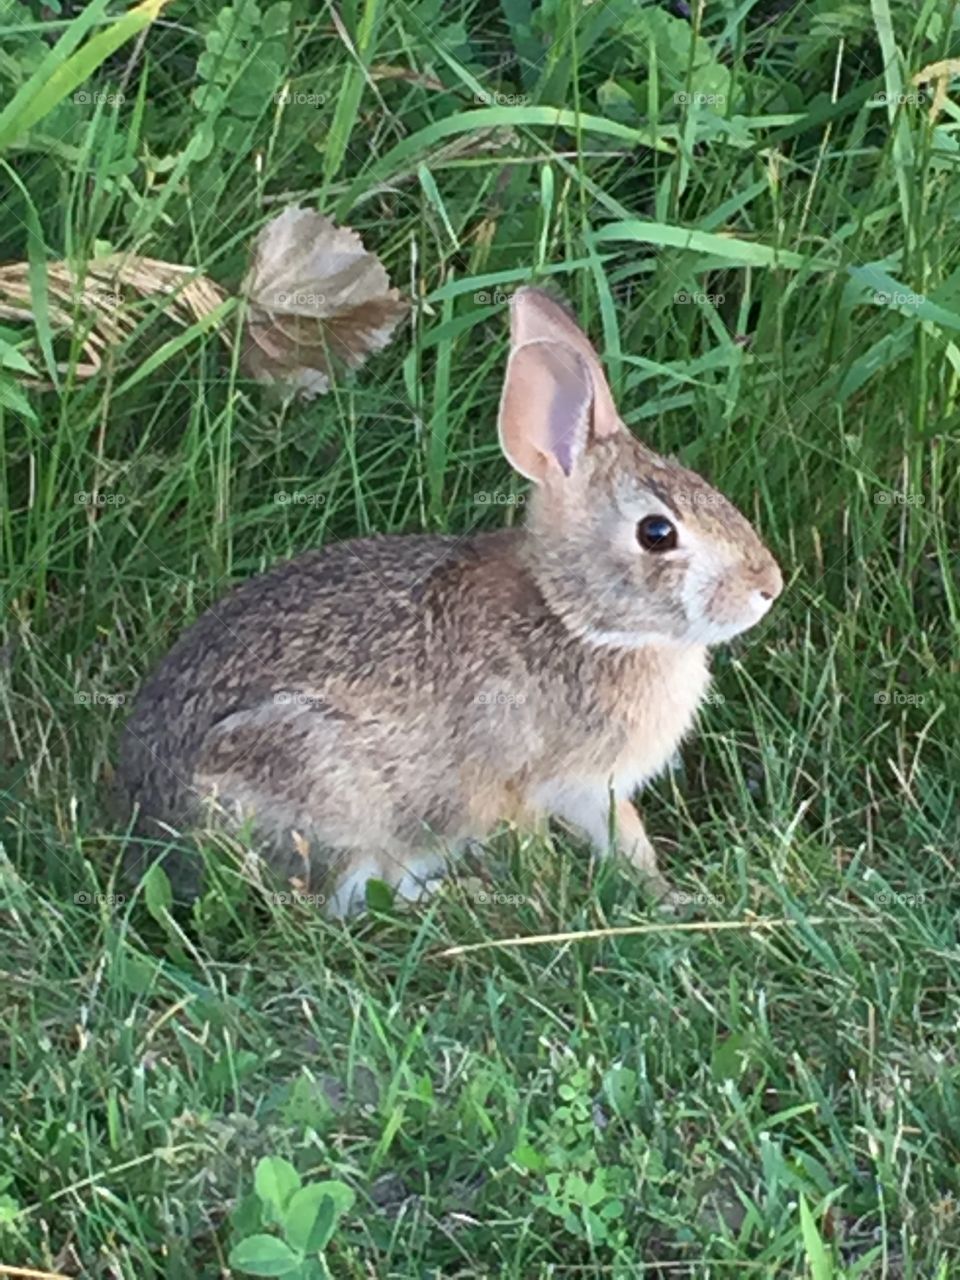 Wild Vermont bunny 